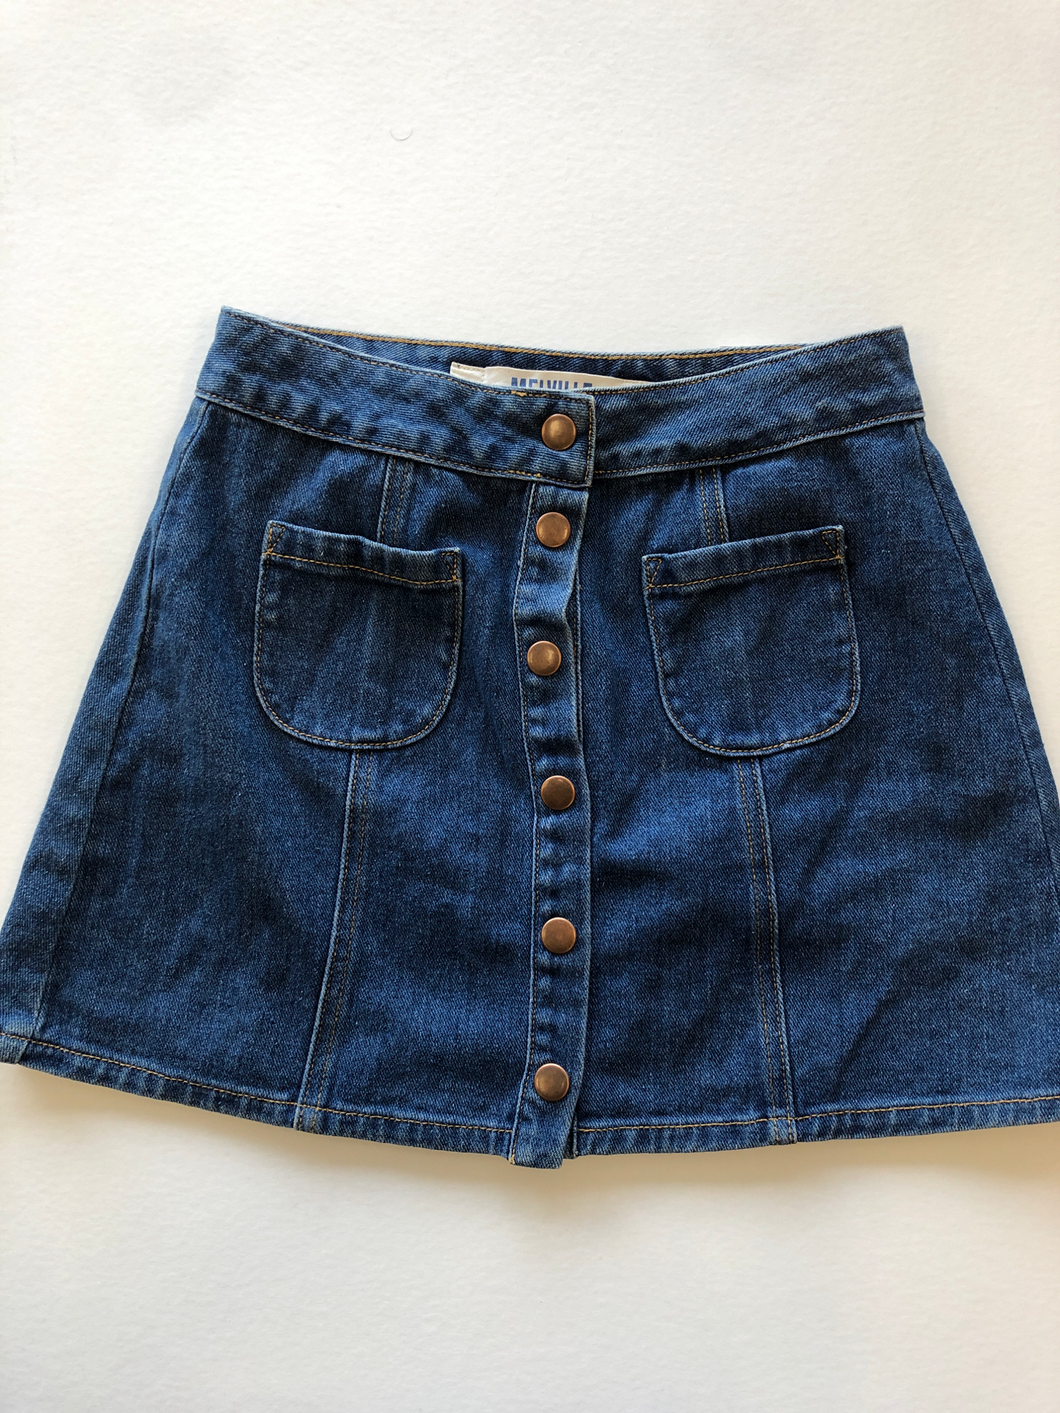 Brandy Melville Short Skirt Size 2